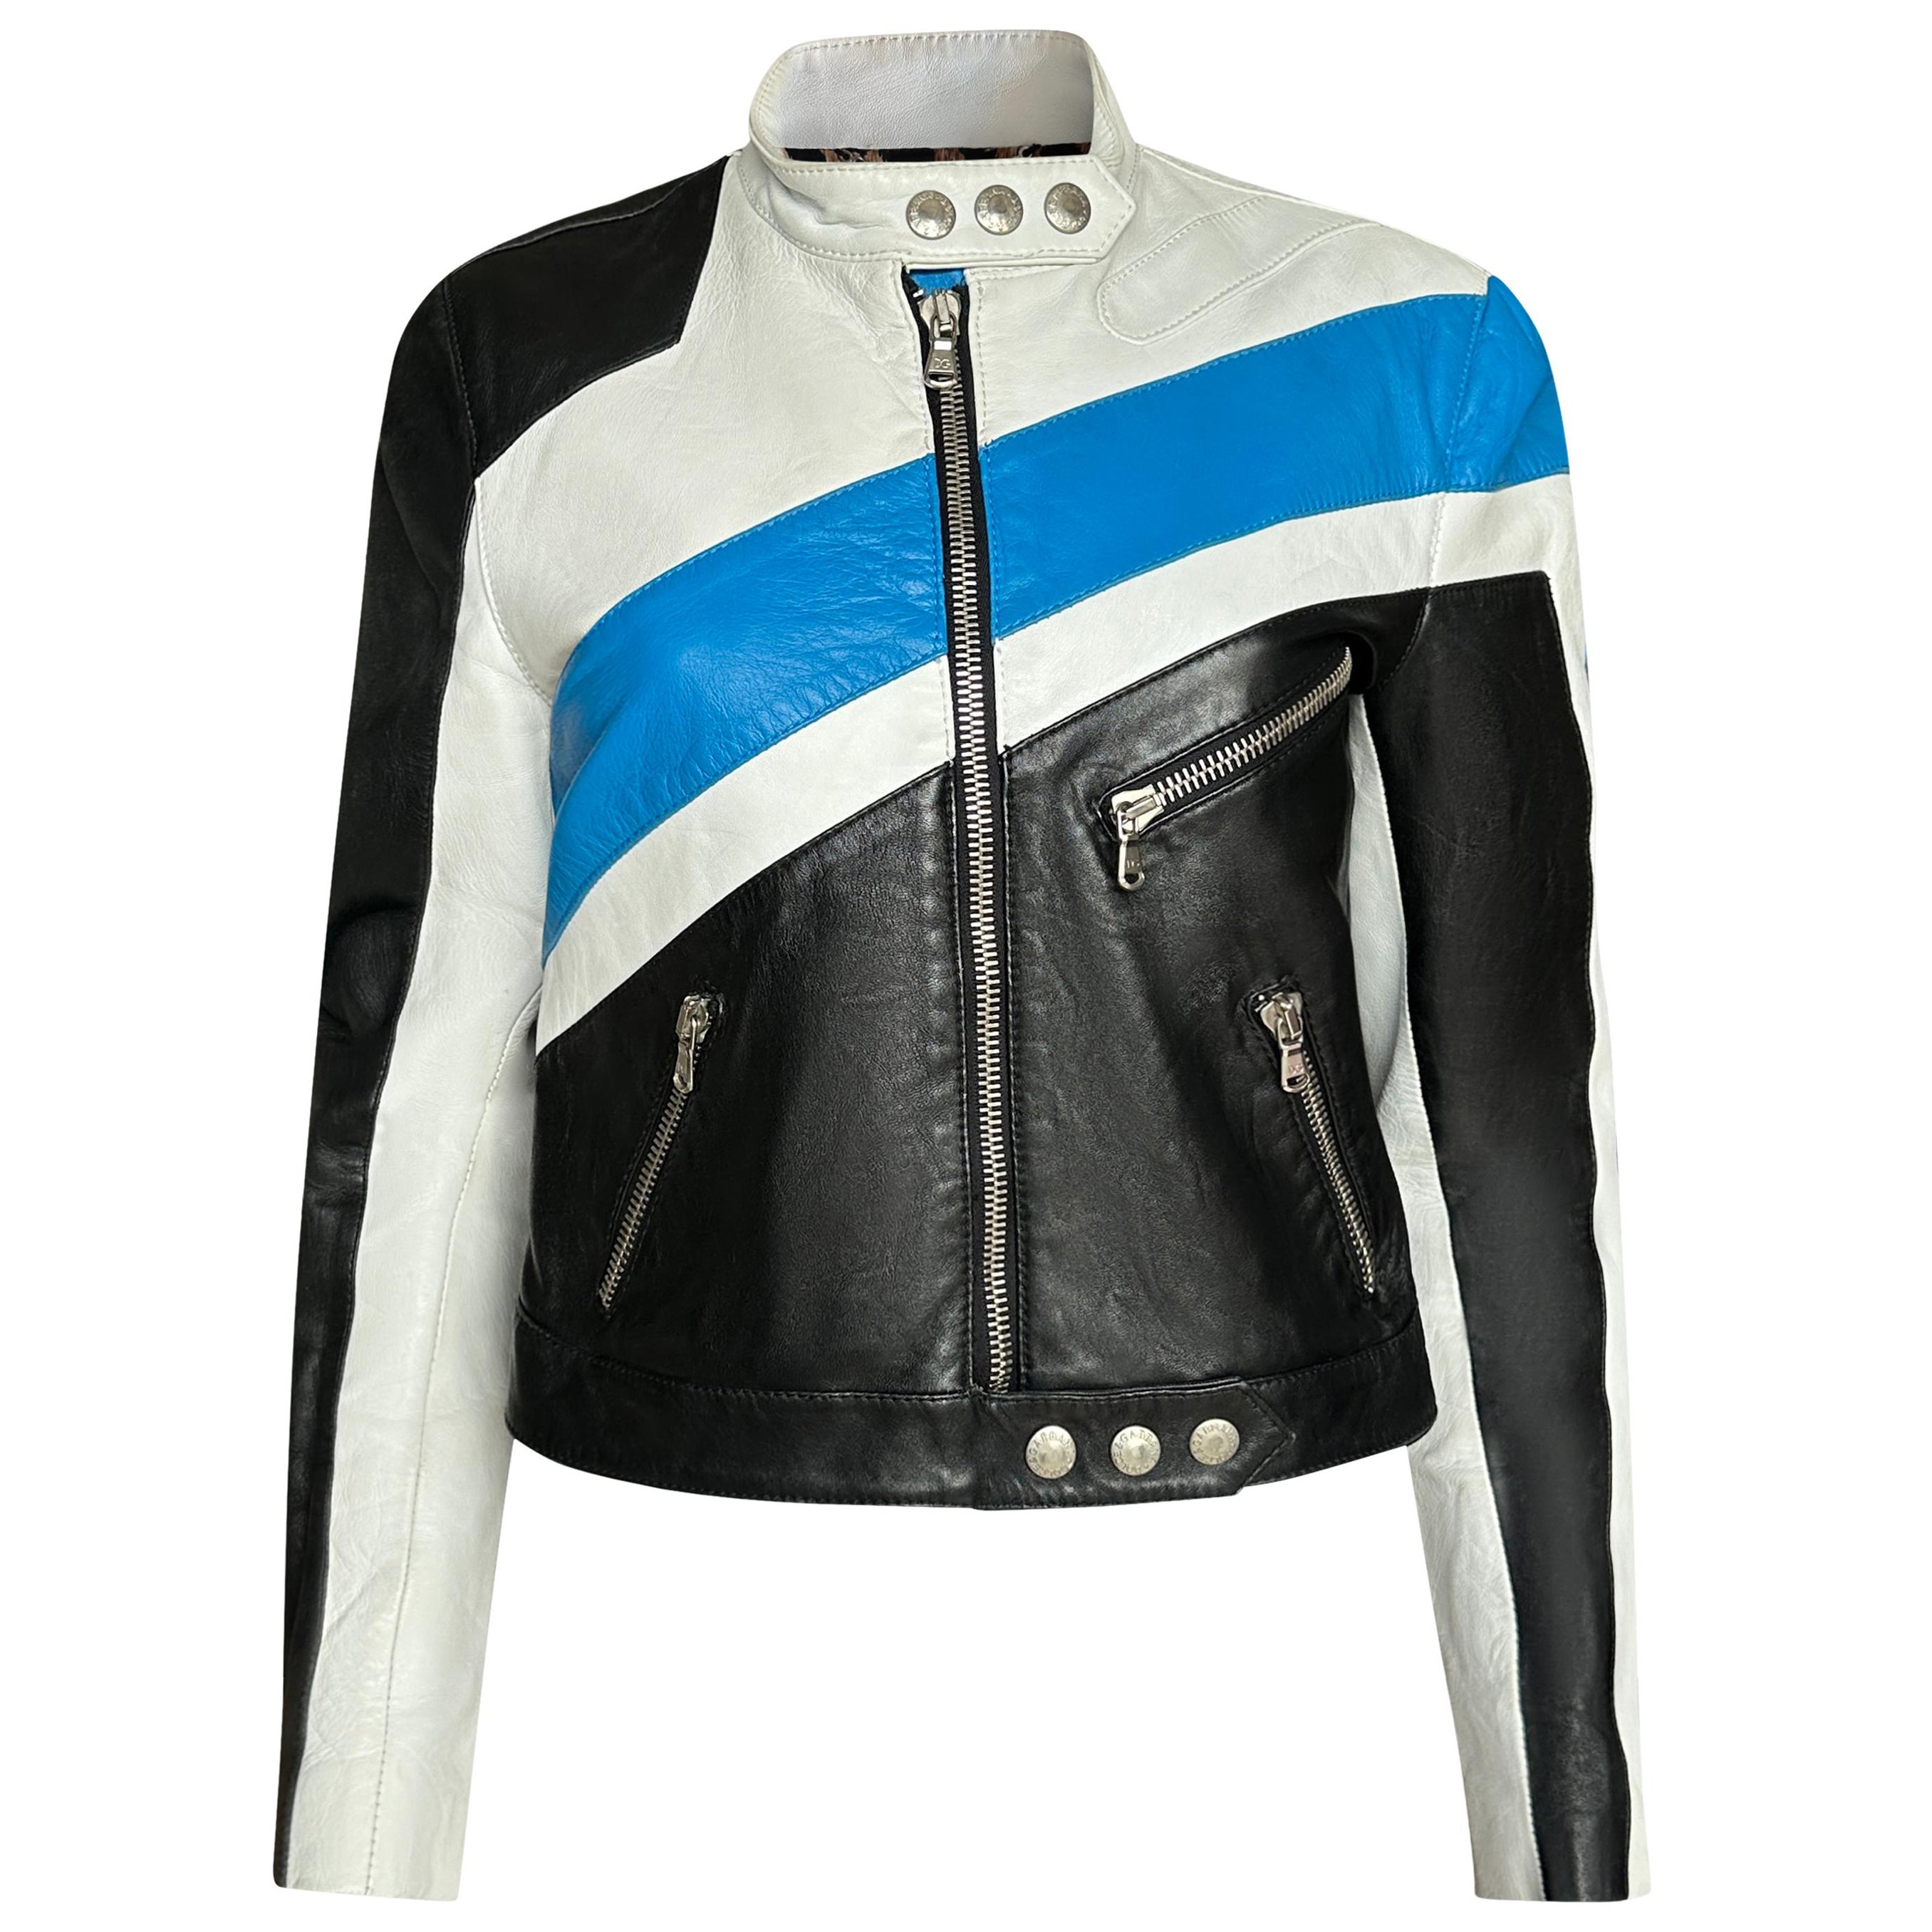 Vintage Dolce & Gabbana SS2001 Runway Biker Leather Jacket worn by Victoria Beck